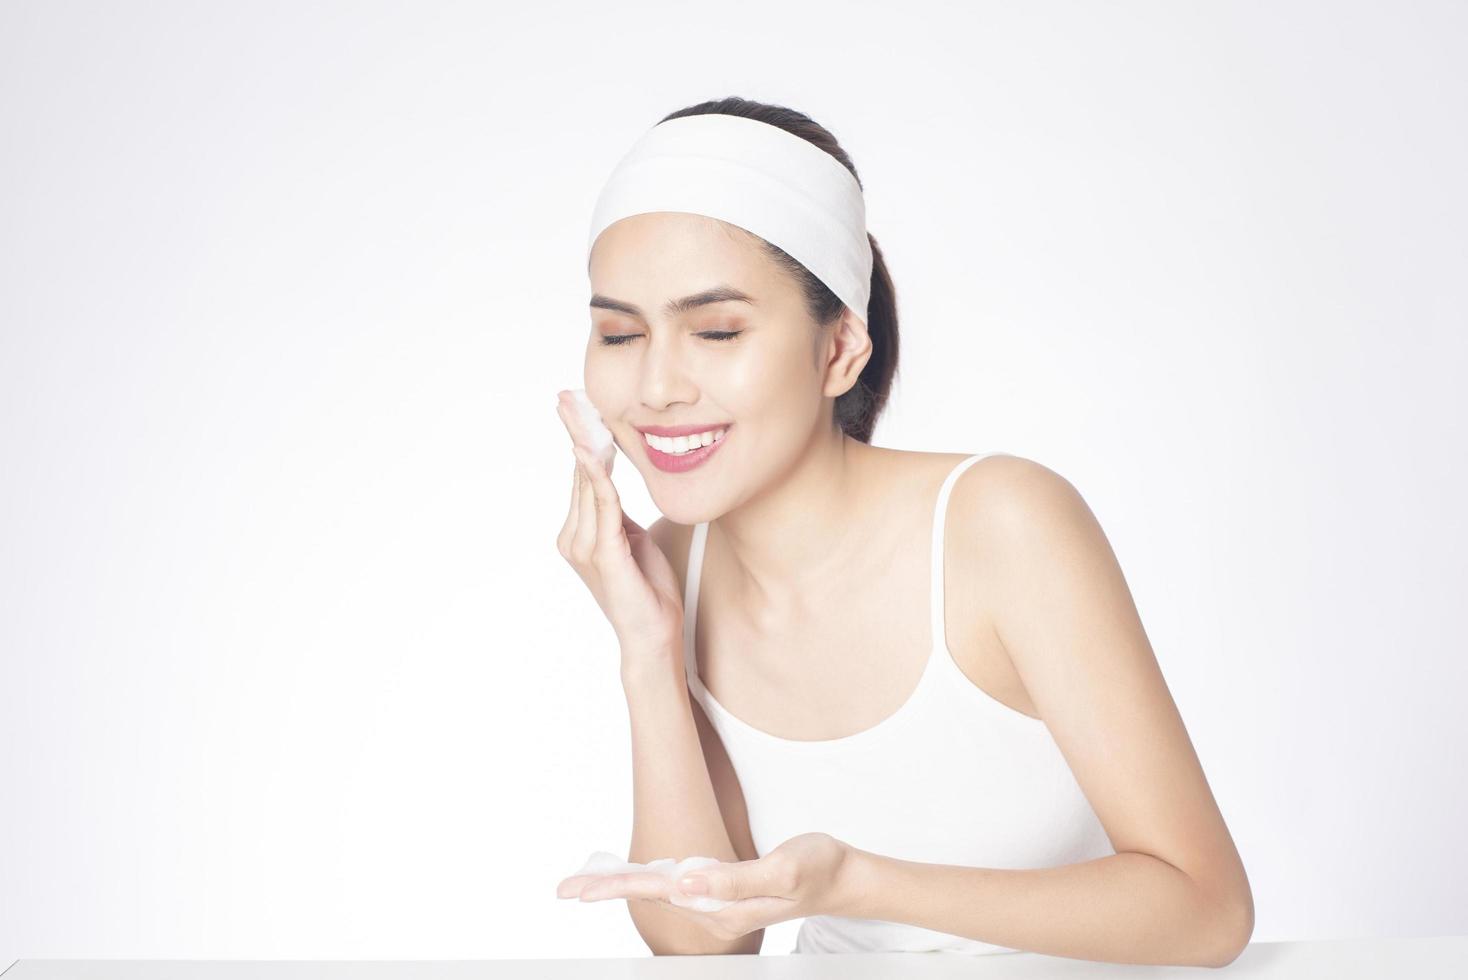 schöne Frau wäscht ihr Gesicht auf weißem Hintergrund foto